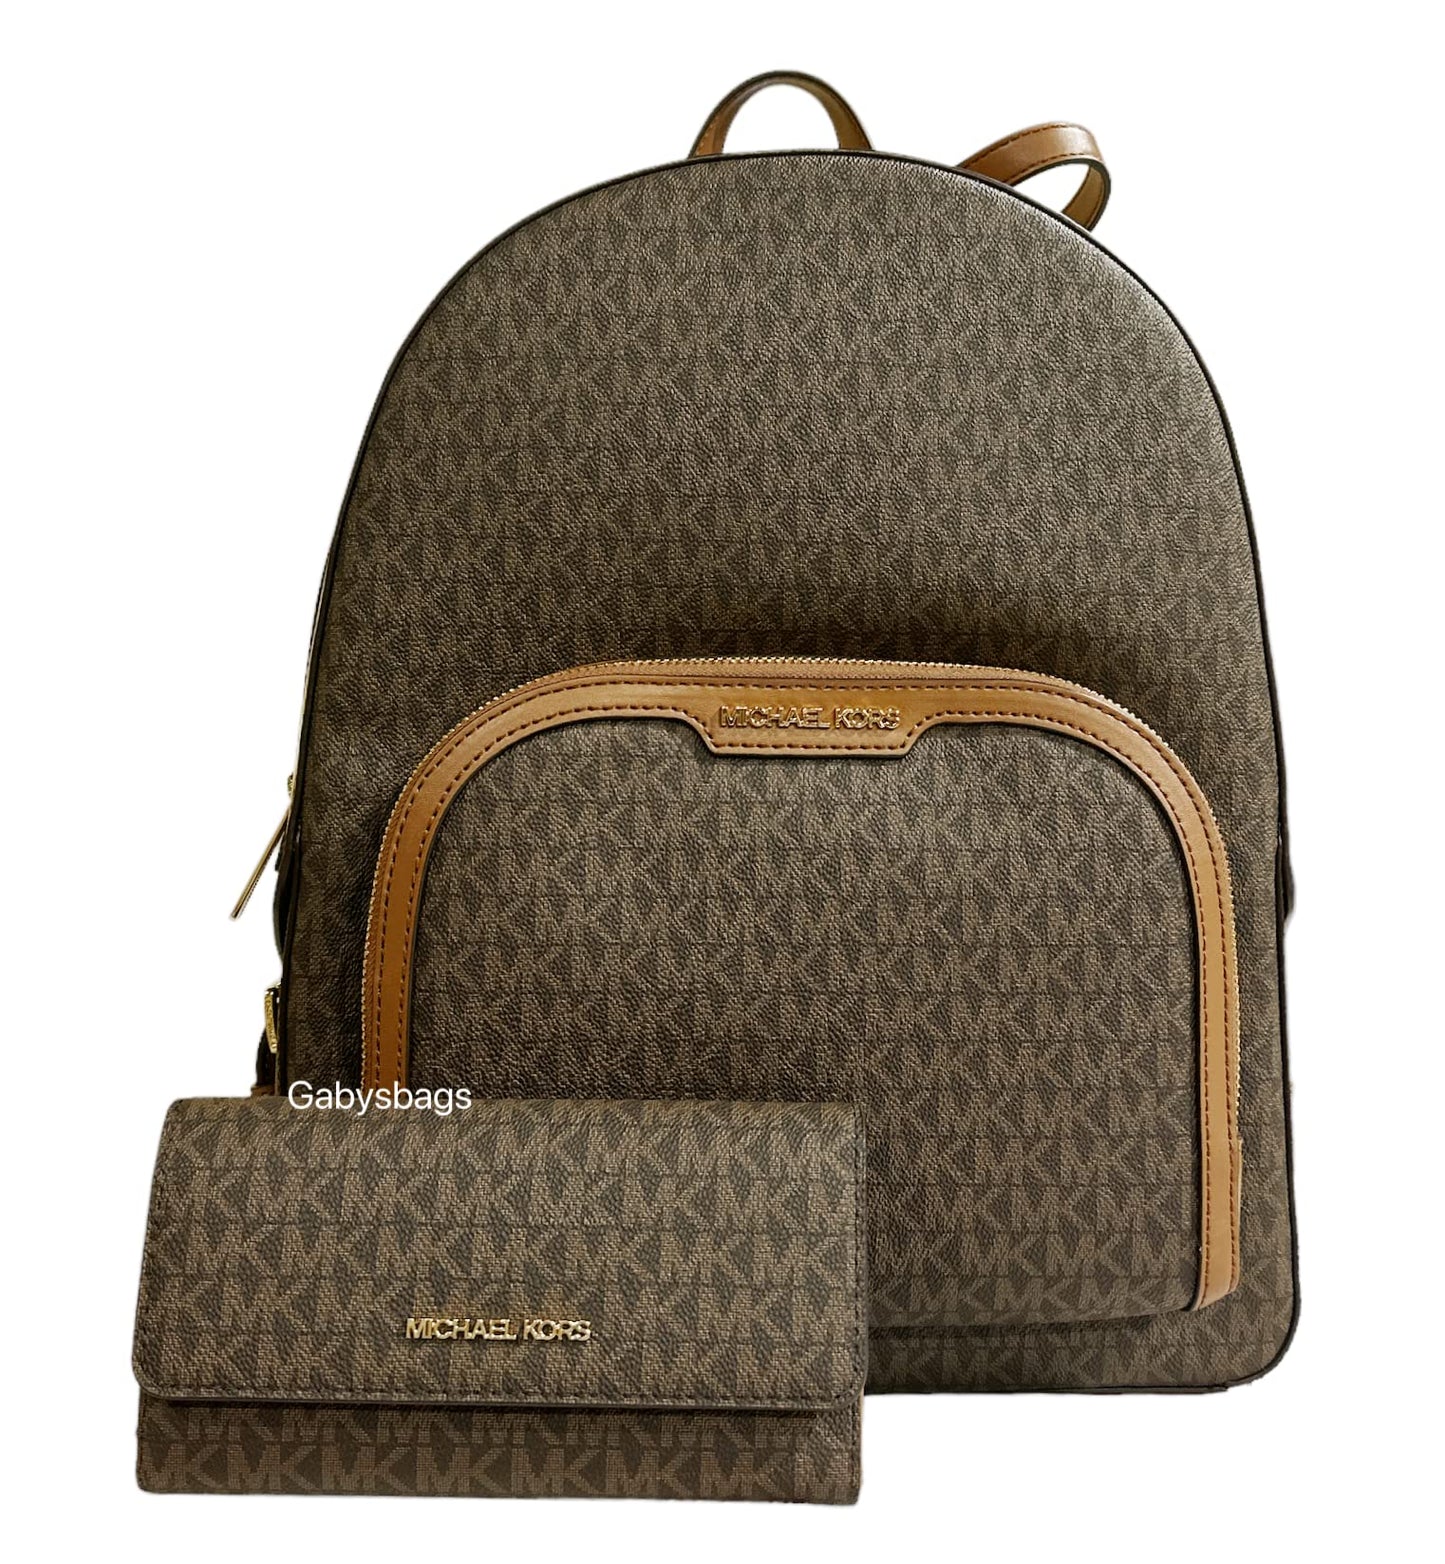 Michael Kors Jaycee Large Backpack School Bag Bundled Jet Set Travel Large Trifold Wallet MK Signature